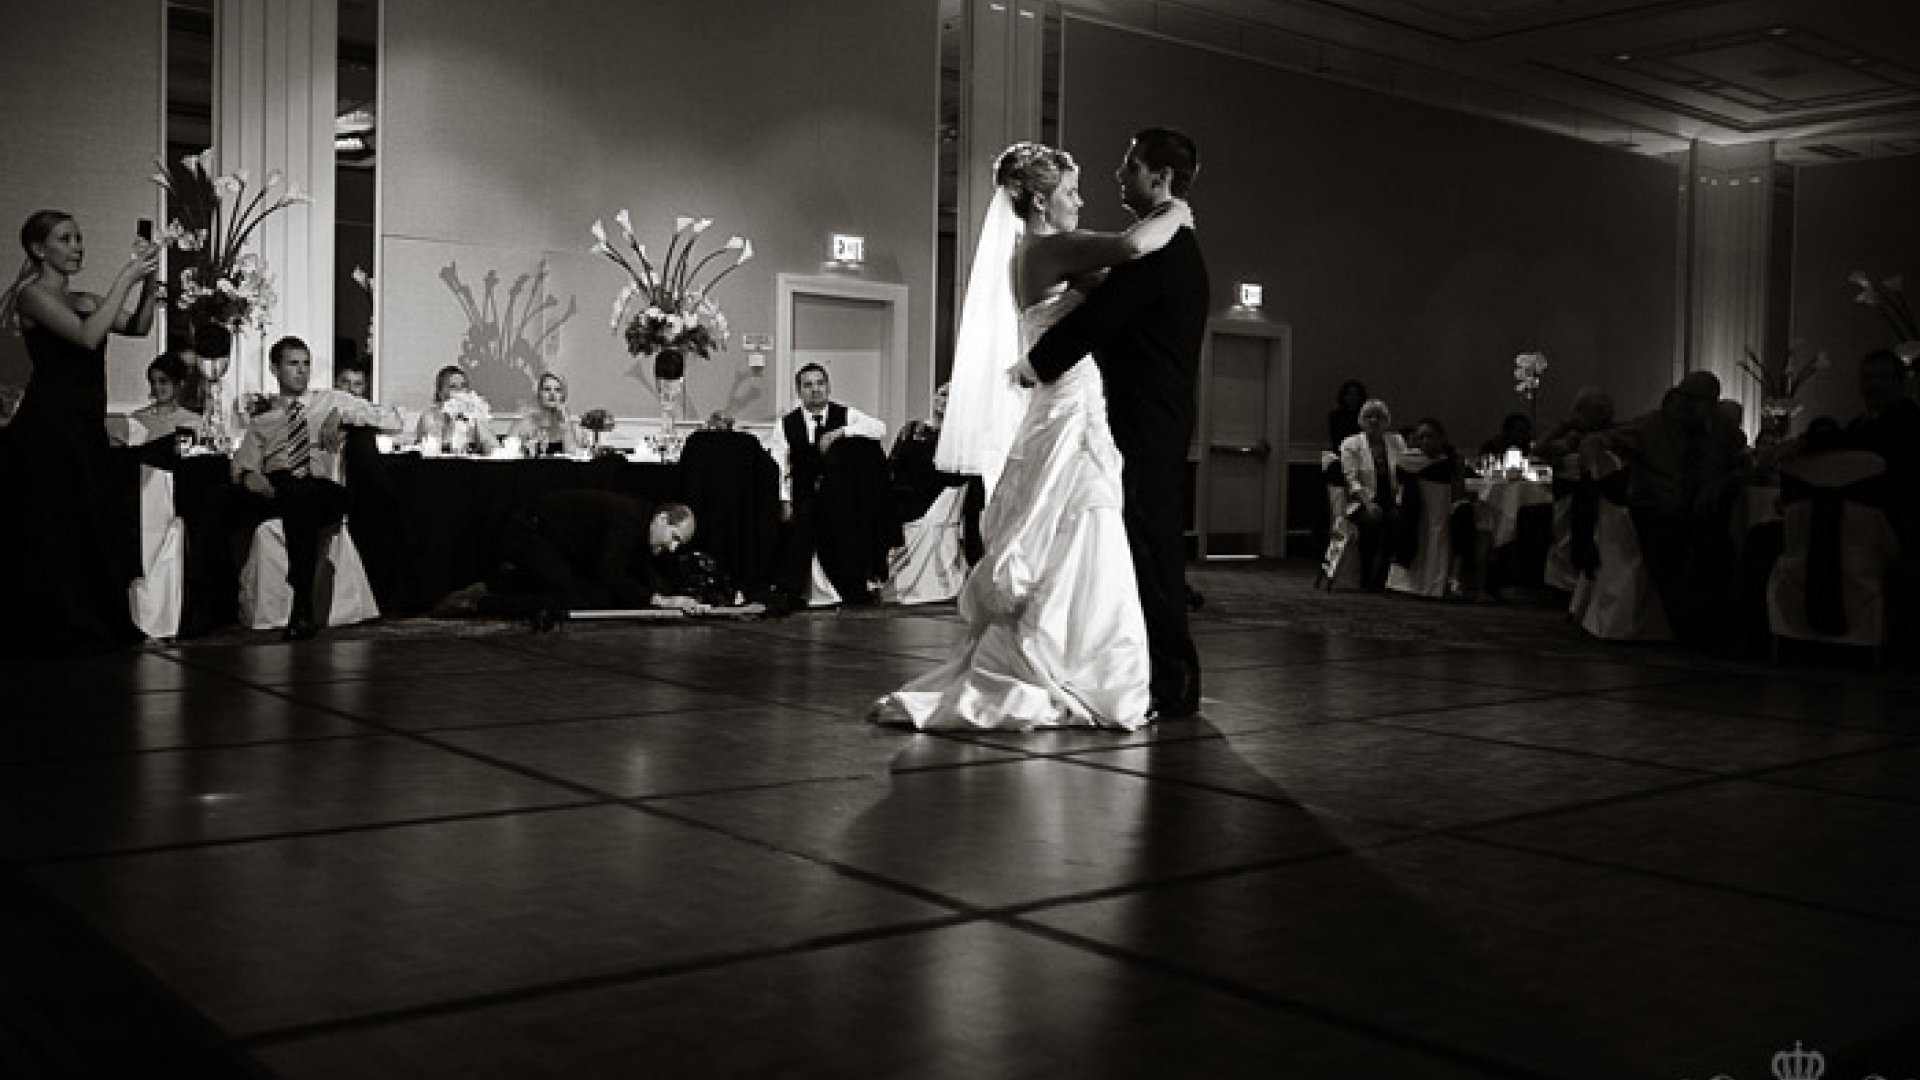 Другой белый танец. Свадебный танец. Свадьба в черно белом стиле. Свадебный танец жениха и невесты. Танго на свадьбе.